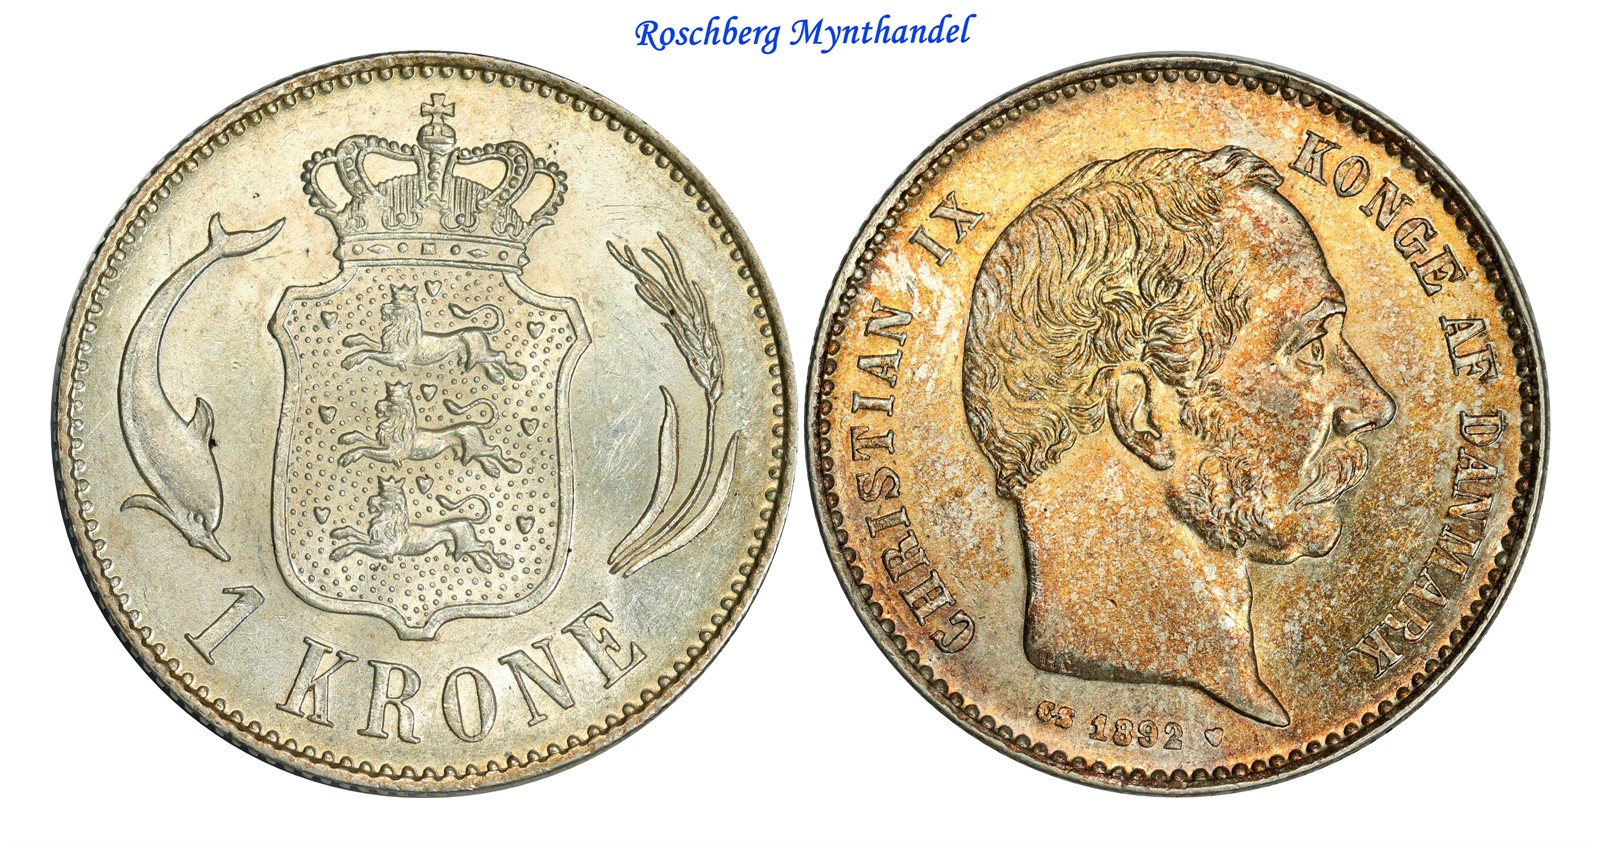 DENMARK. 1 Krone 1892 UNC